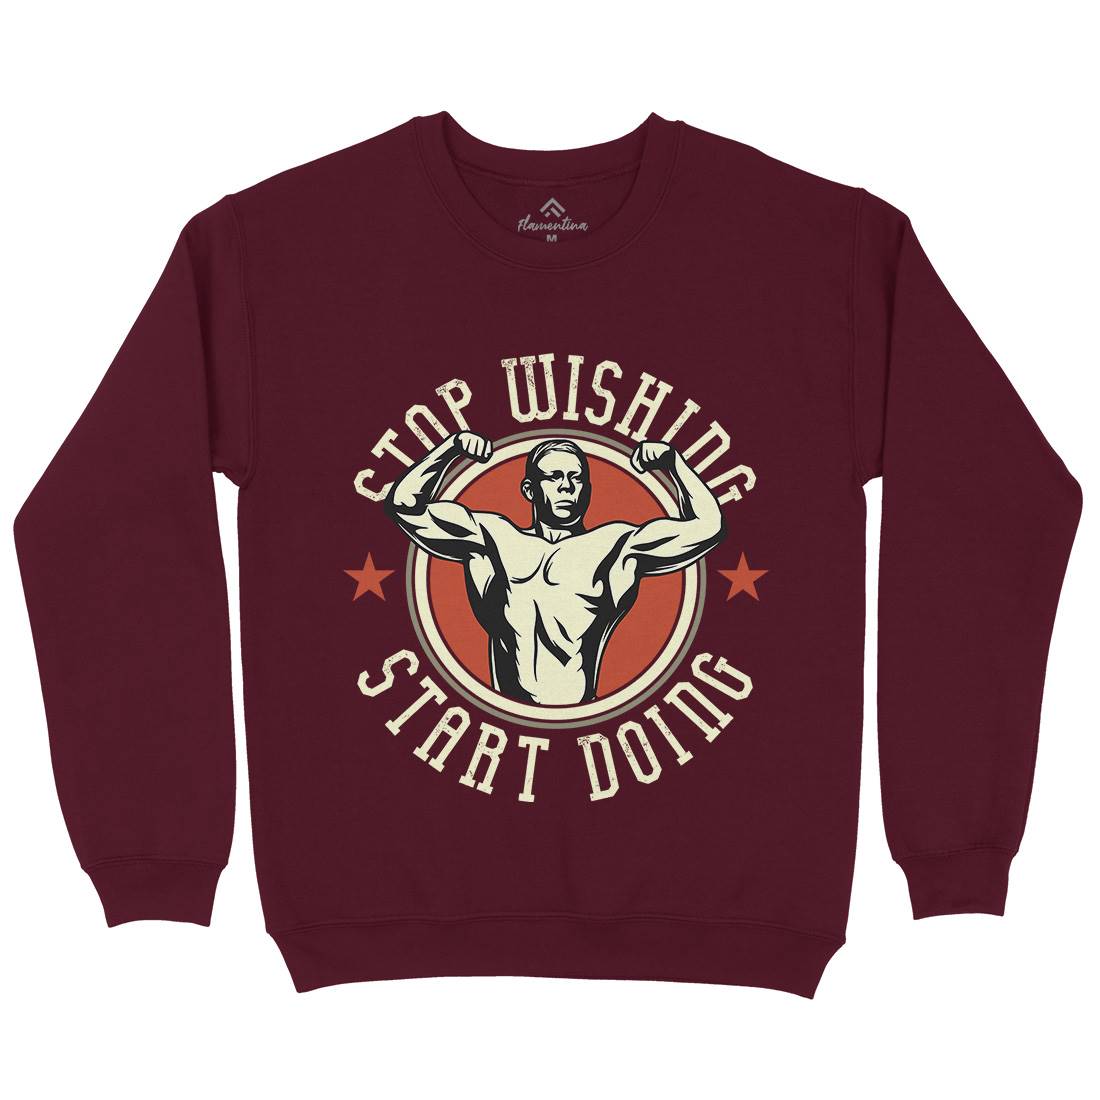 Stop Wishing Kids Crew Neck Sweatshirt Gym D985